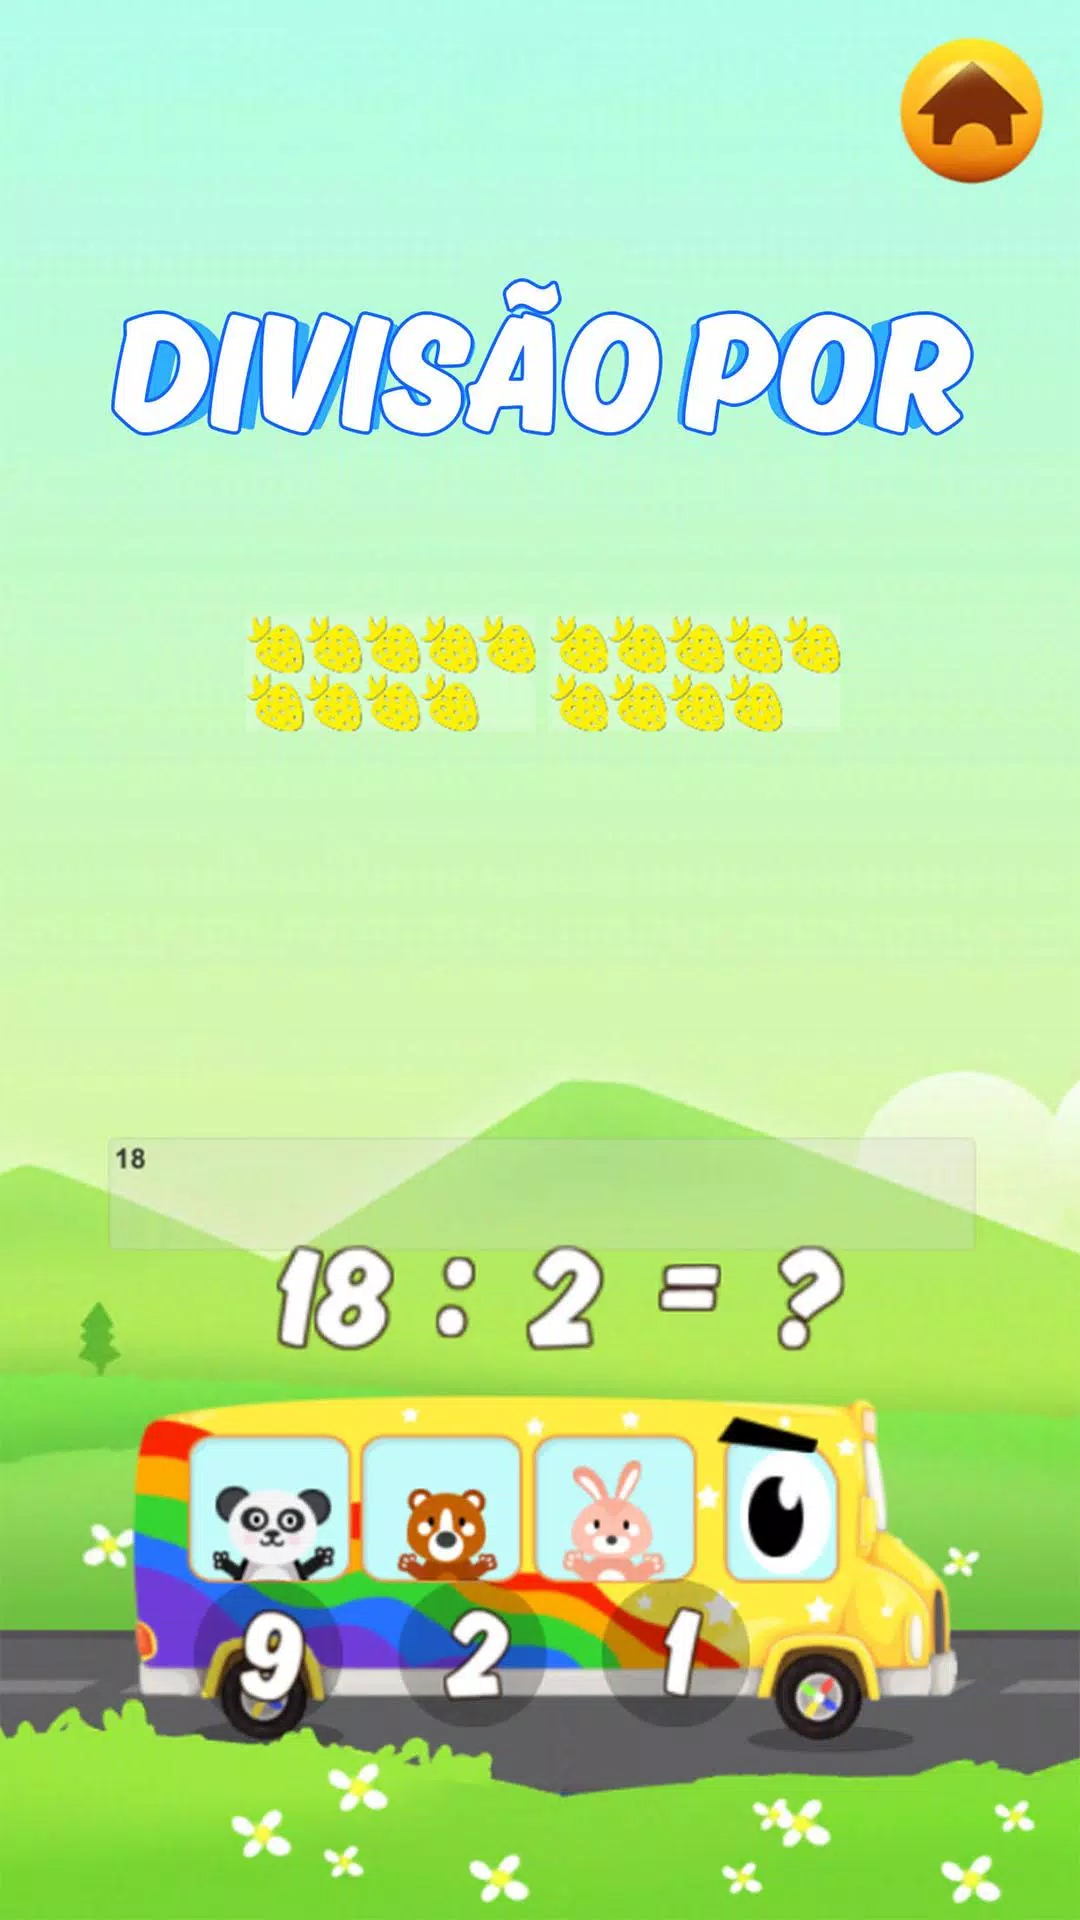 Download do APK de Jogos de Matemática para Android